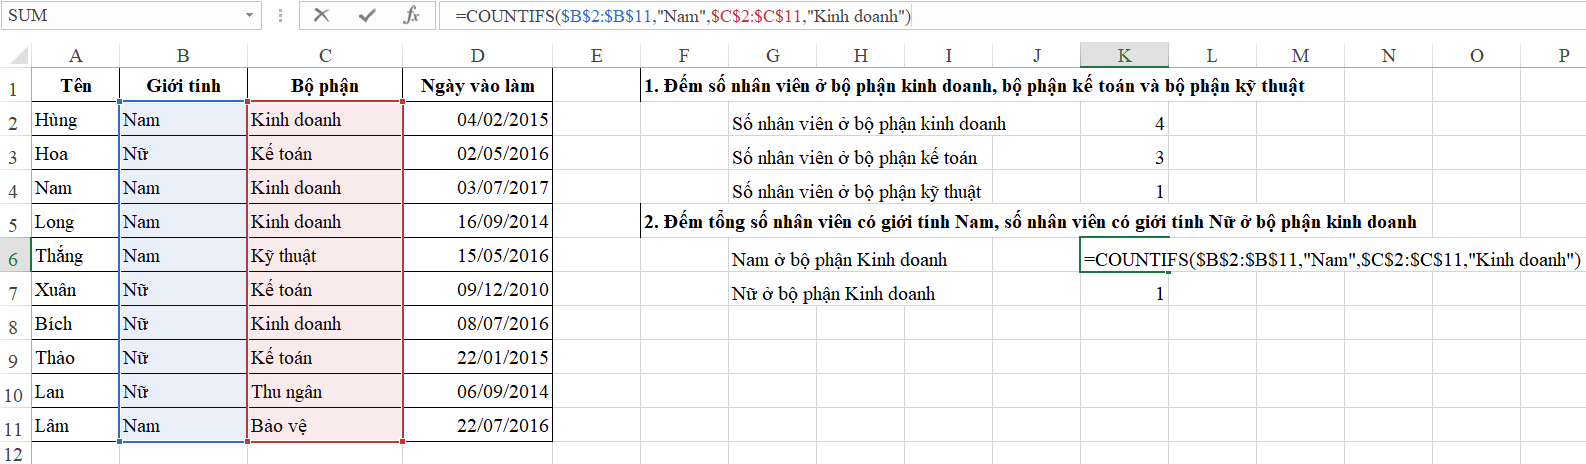 Hướng dẫn chi tiết cách đếm số lần xuất hiện trong Excel 4